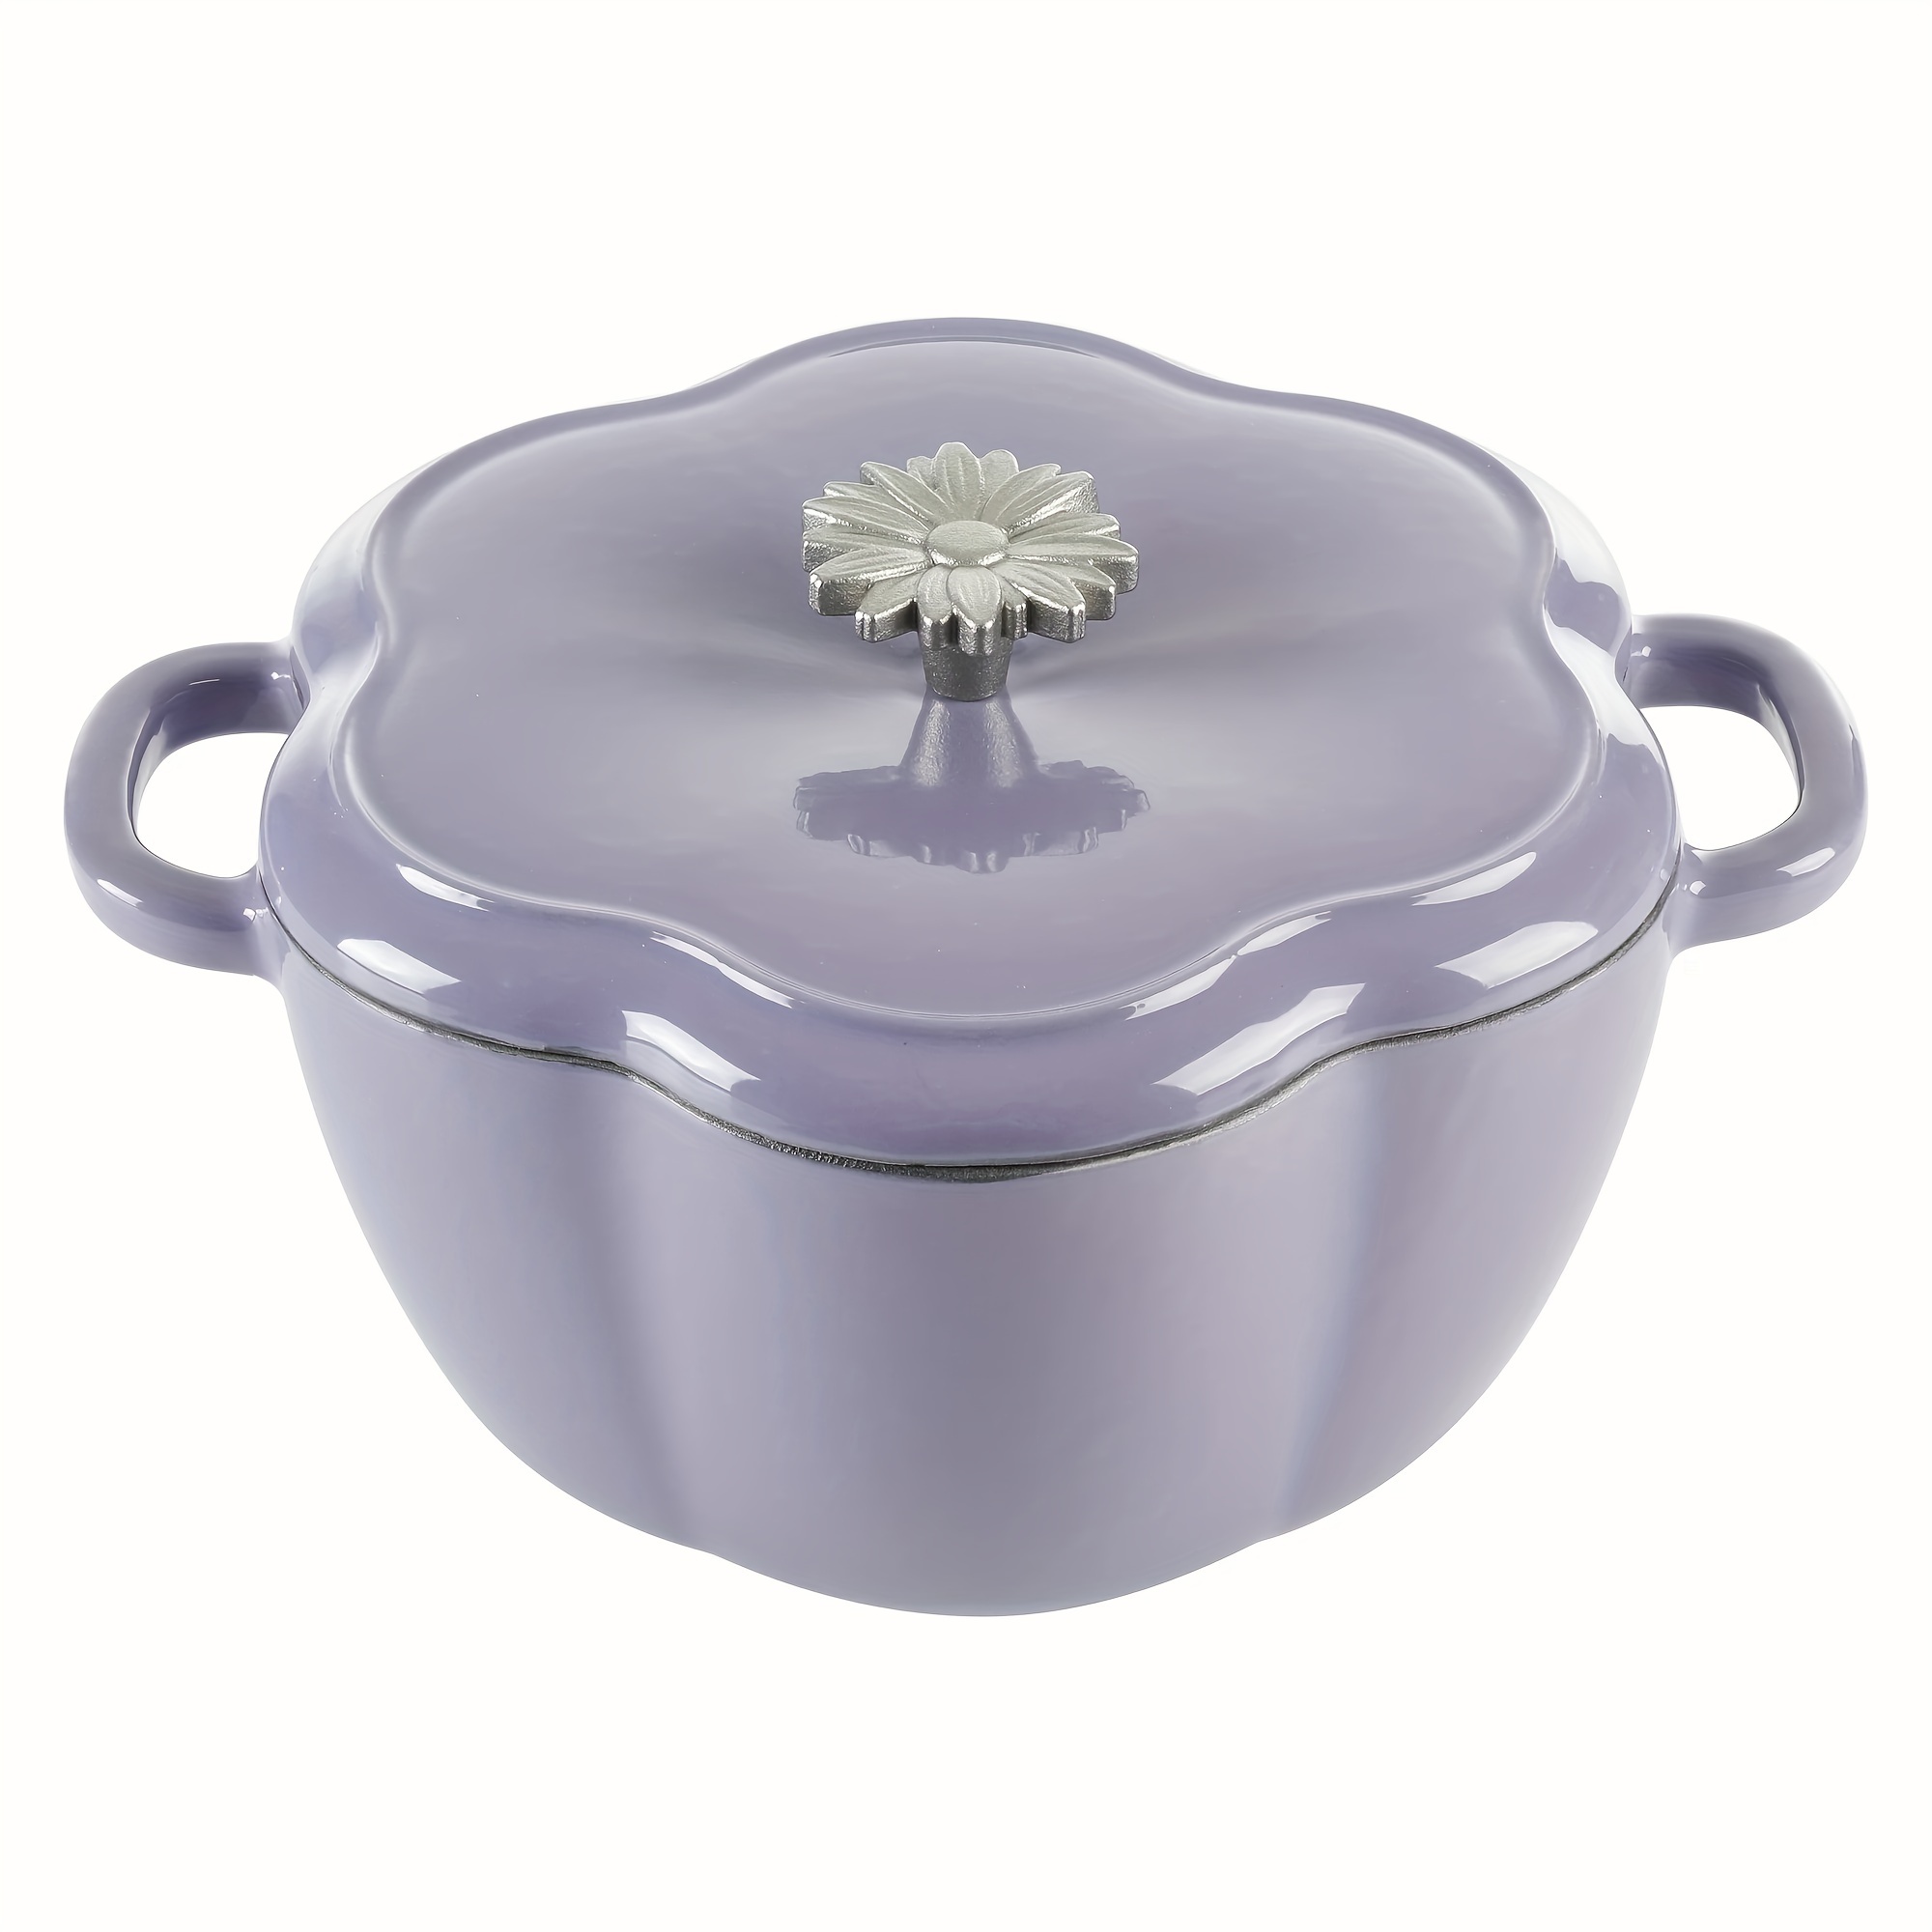 

Beauty Floral Shaped Enamel Cast Iron 3-quart Dutch Oven, Purple